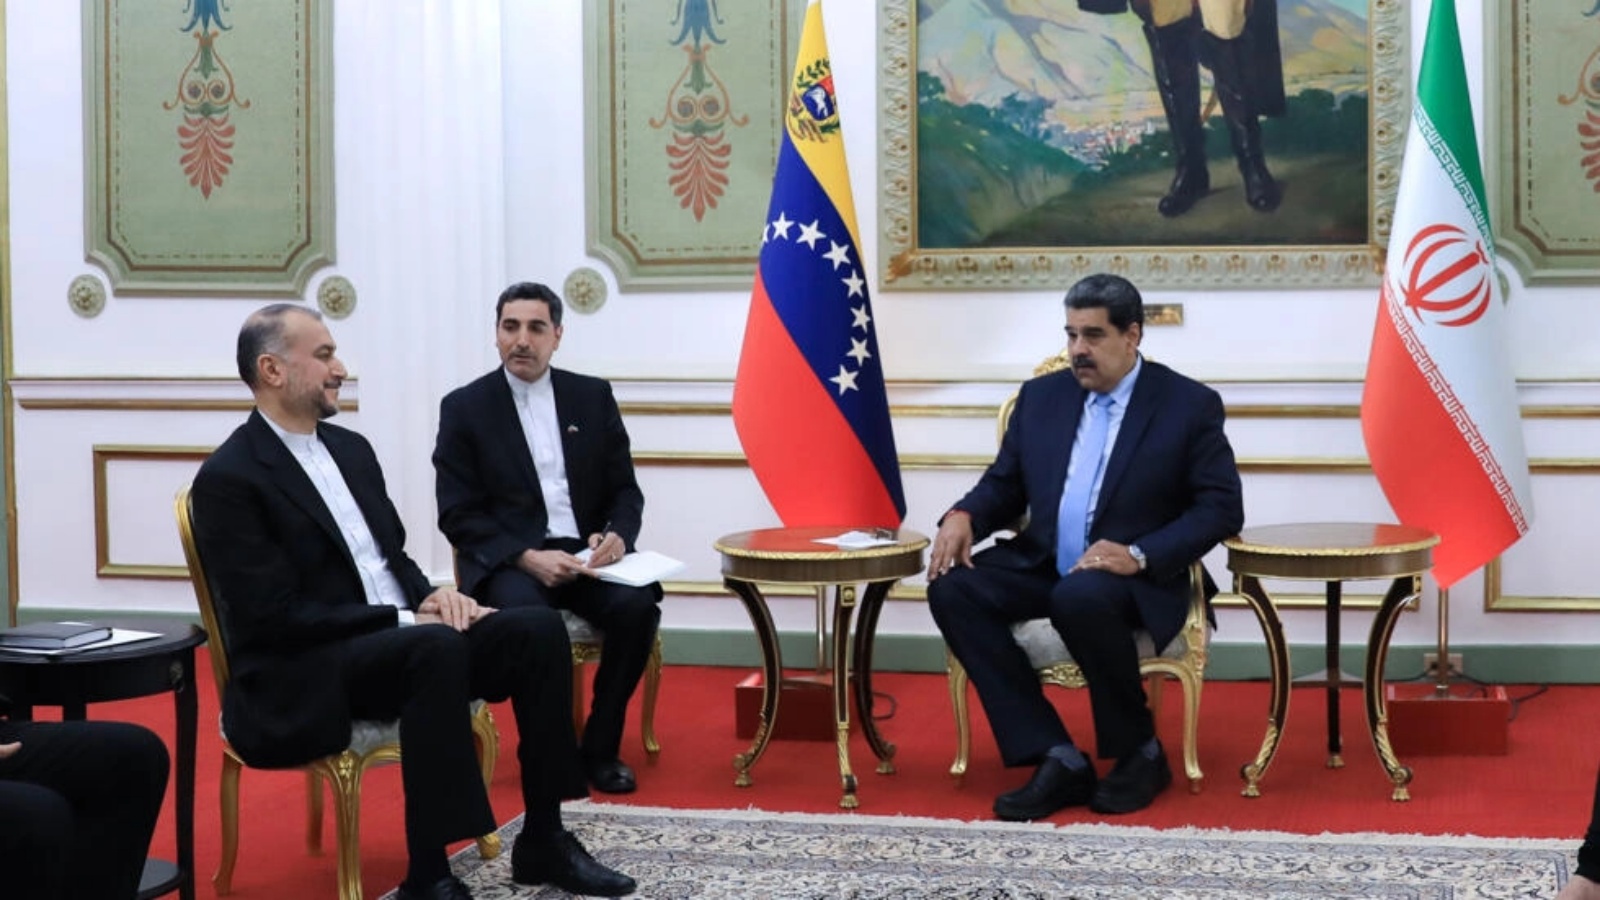 صورة وزّعها القصر الرئاسي الفنزويلي تظهر الرئيس نيكولاس مادورو (يمين) مستقبلا وزير الخارجية الإيراني حسين أمير عبداللهيان (يسار) في كراكاس في الثالث من فبراير 2023 